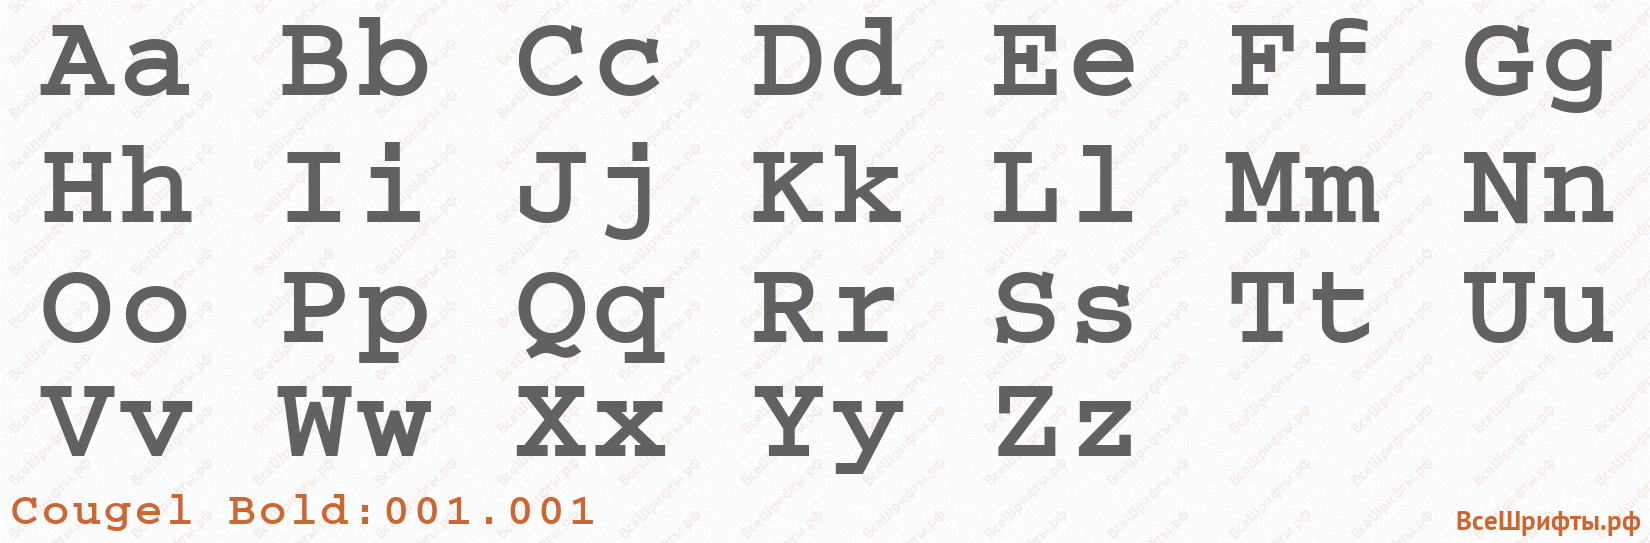 Шрифт Cougel Bold:001.001 с латинскими буквами